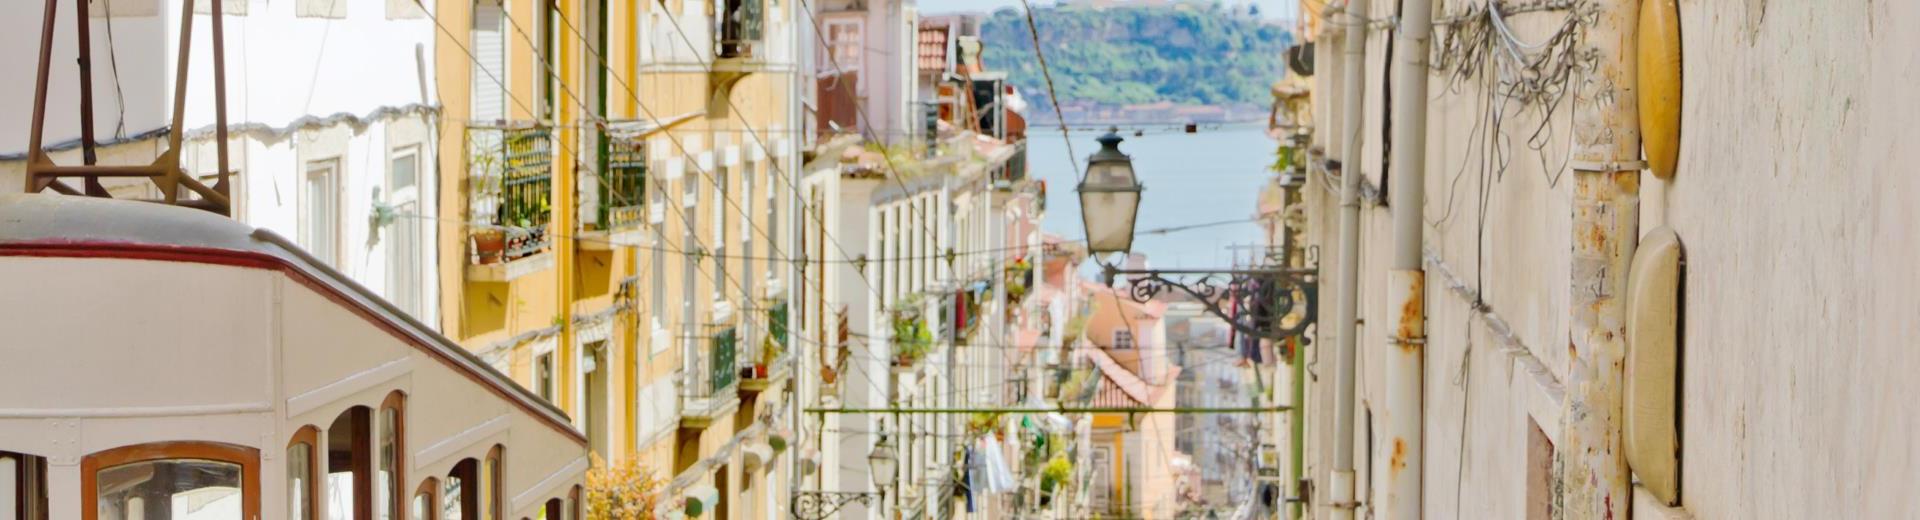 Ferienwohnungen & Ferienhäuser für Urlaub im Großraum Lissabon - Casamundo